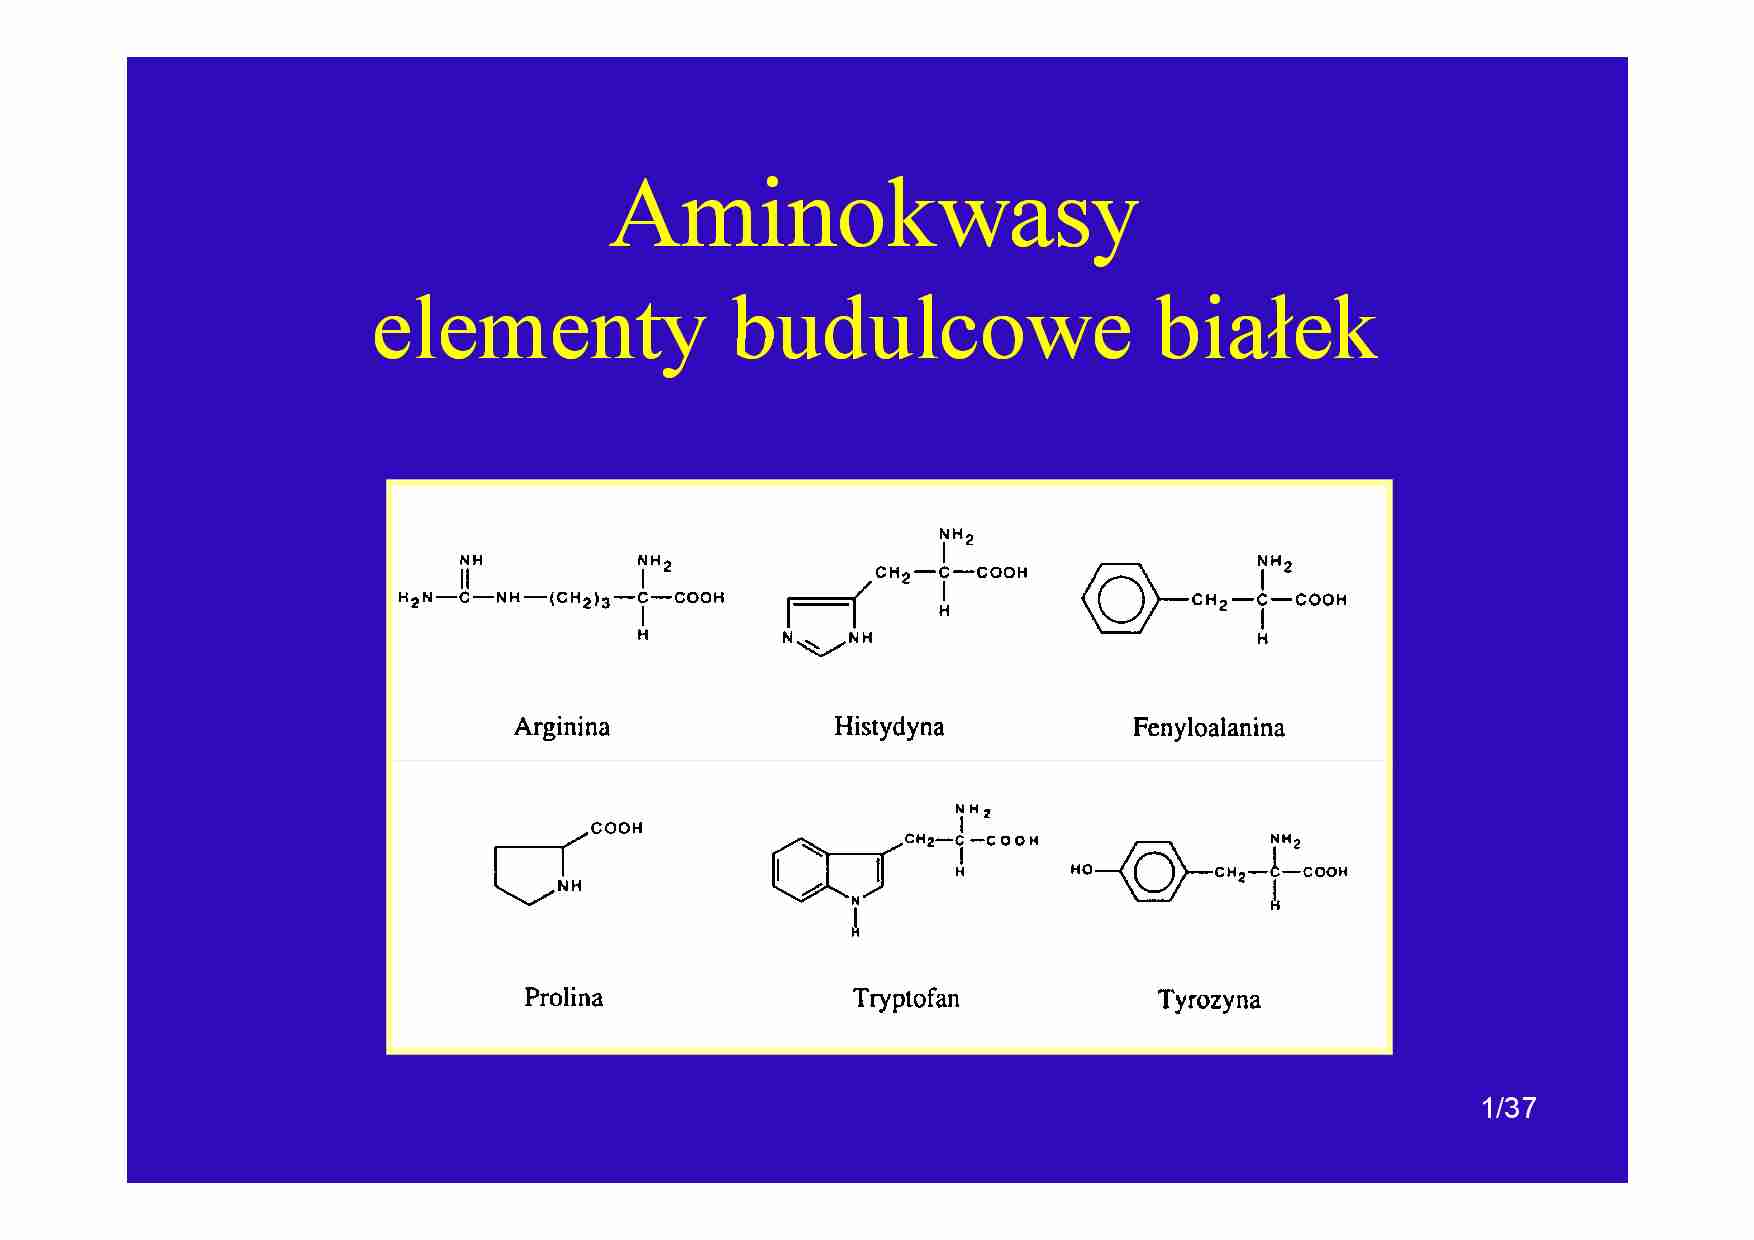 Aminokwasy-elementy budulcowe bialek - strona 1